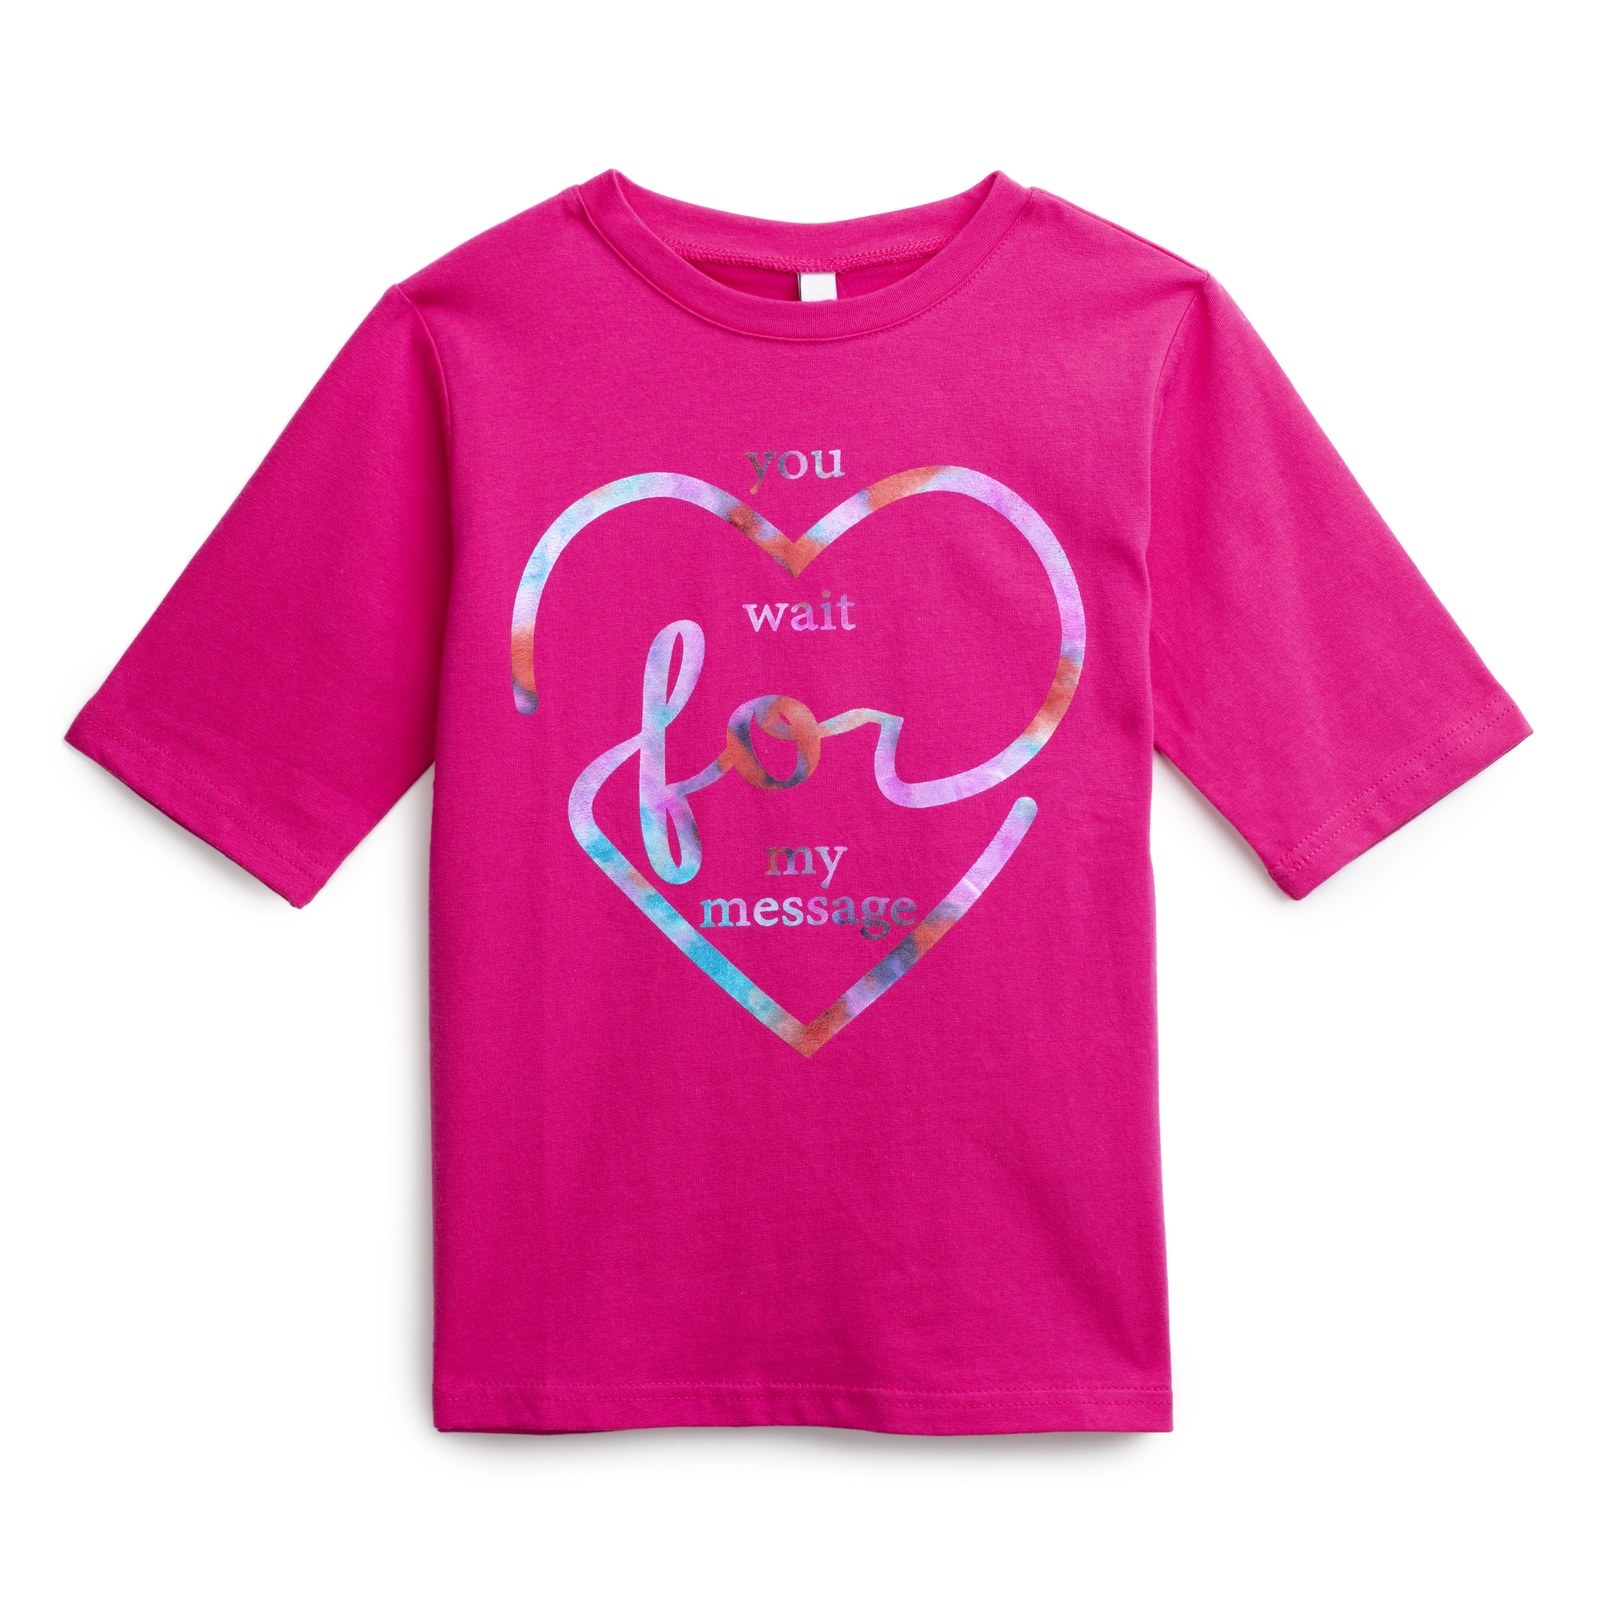 Розовая футболка для девочки. Футболка для девочки розовая. Темно розовая футболка детская. Розовая футболка для девочки 152. Футболки для девочек и лонгсливы в магазинах PLAYTODAY.